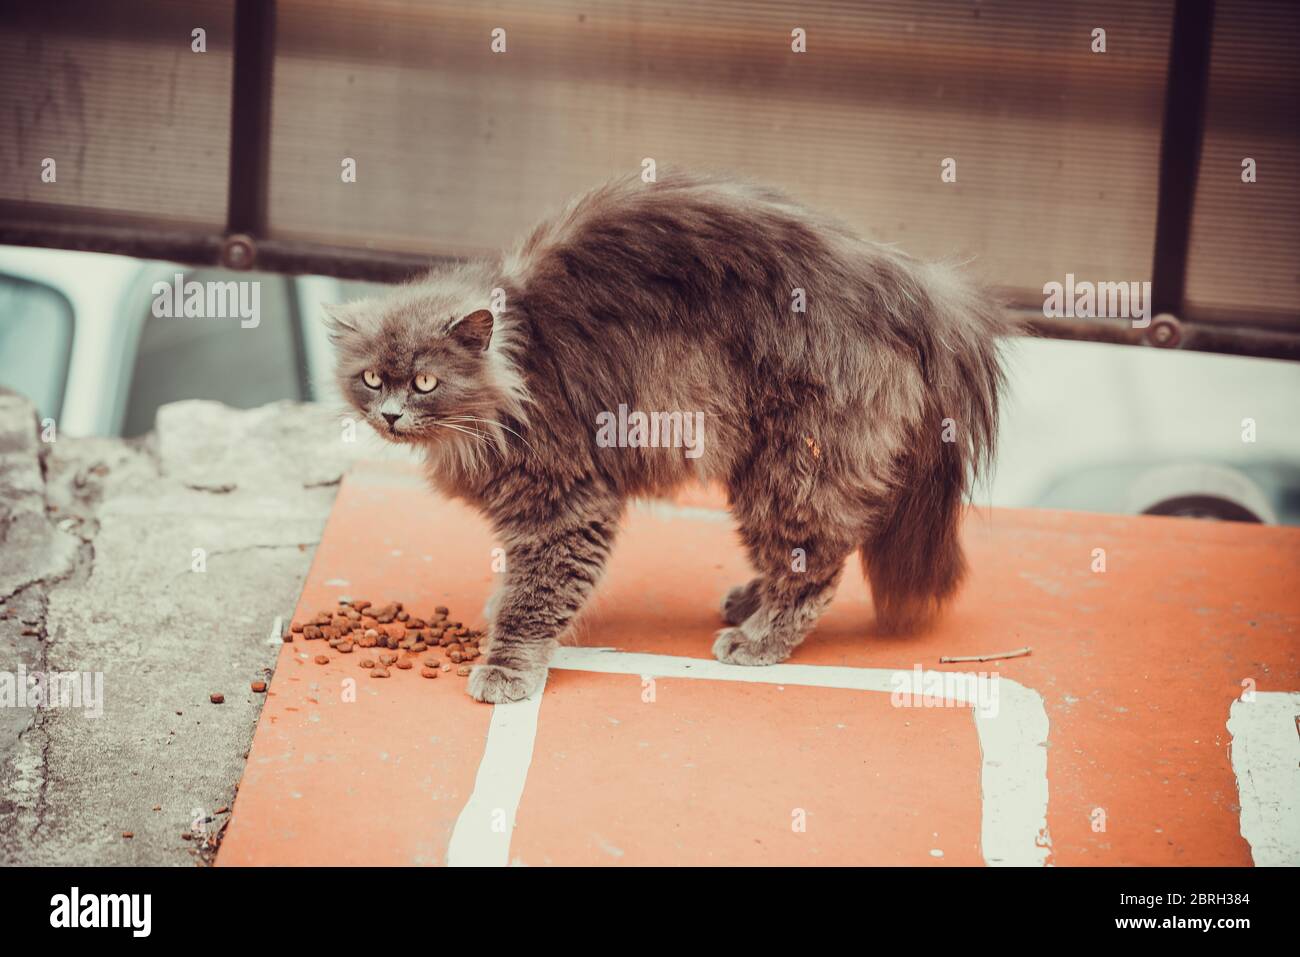 Verängstigte Katze. Katze mit runzeligen und zerzausten Haaren und einem  gebrochenen Auge Stockfotografie - Alamy